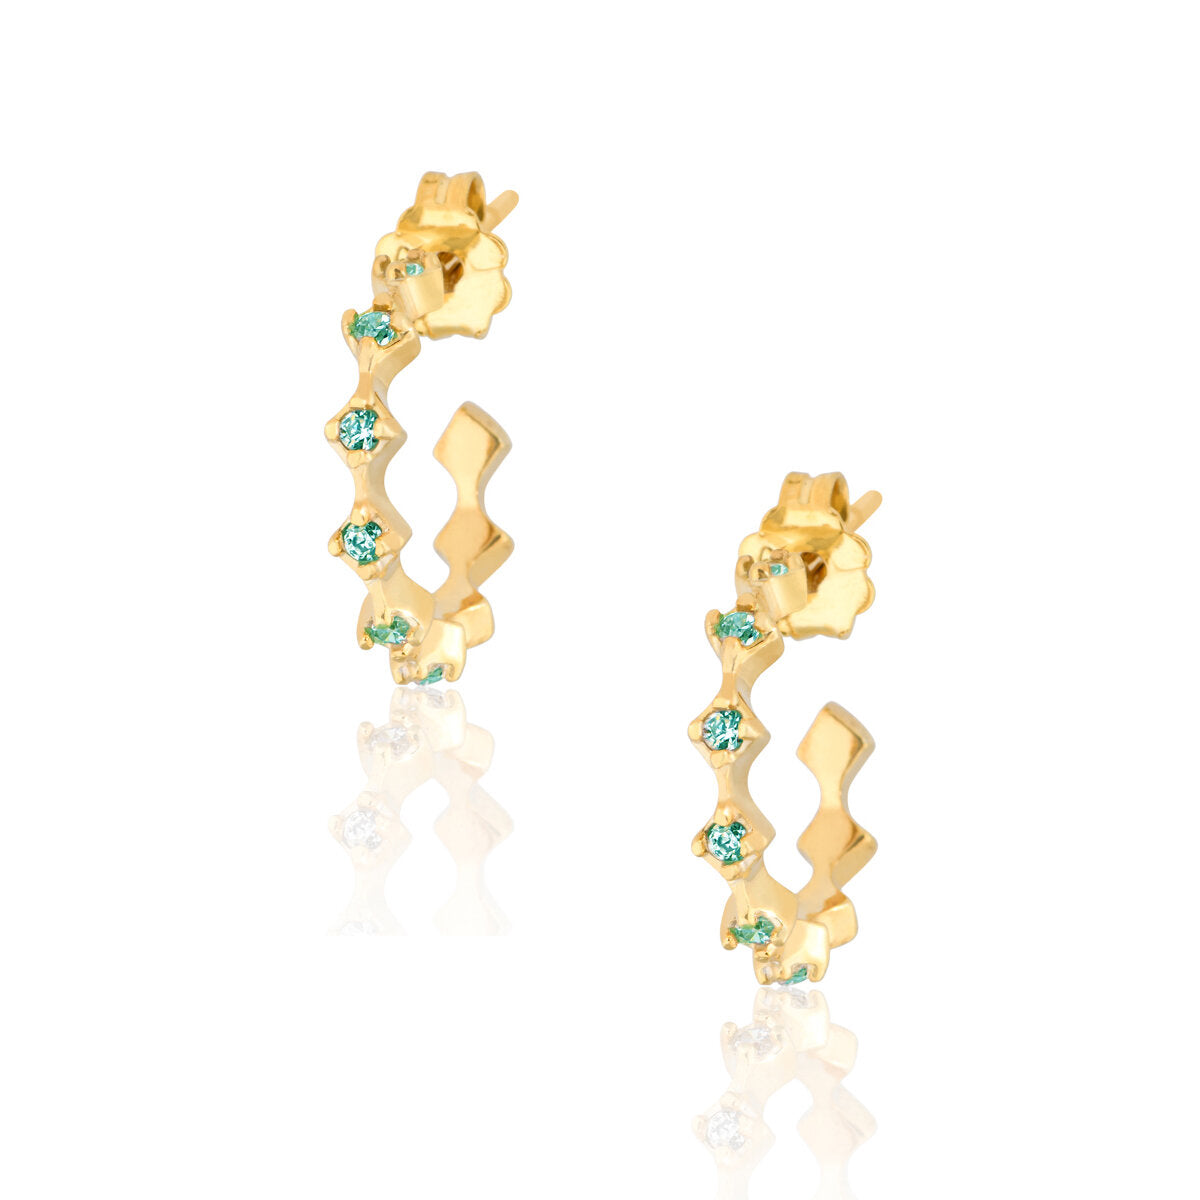 Emerald Rhombus Pair Hoops Earrings - Gold Plated